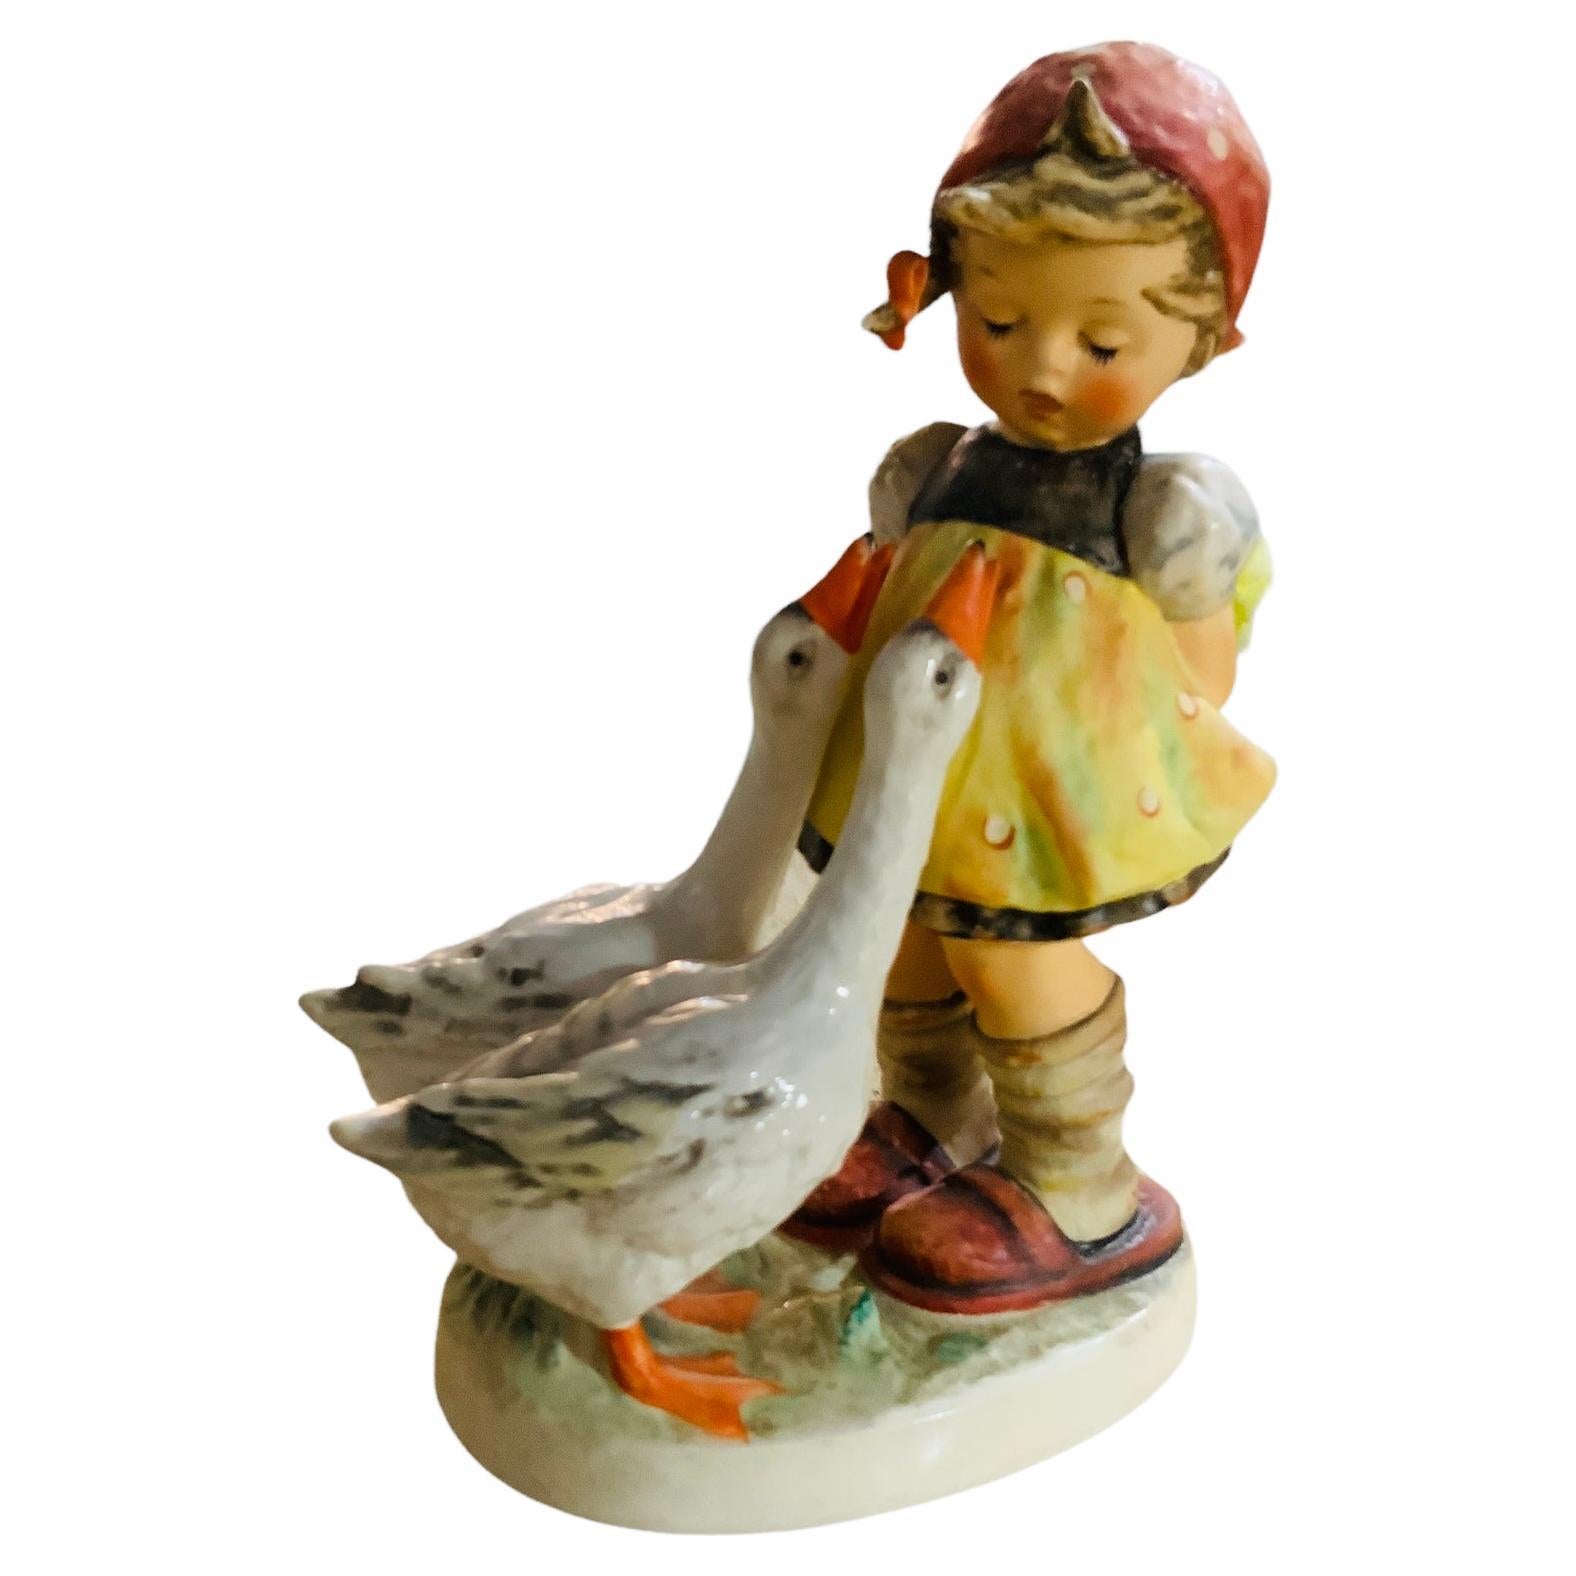 Goebel Company Hummel Porcelain Figurine Girl “Goose Girl” For Sale